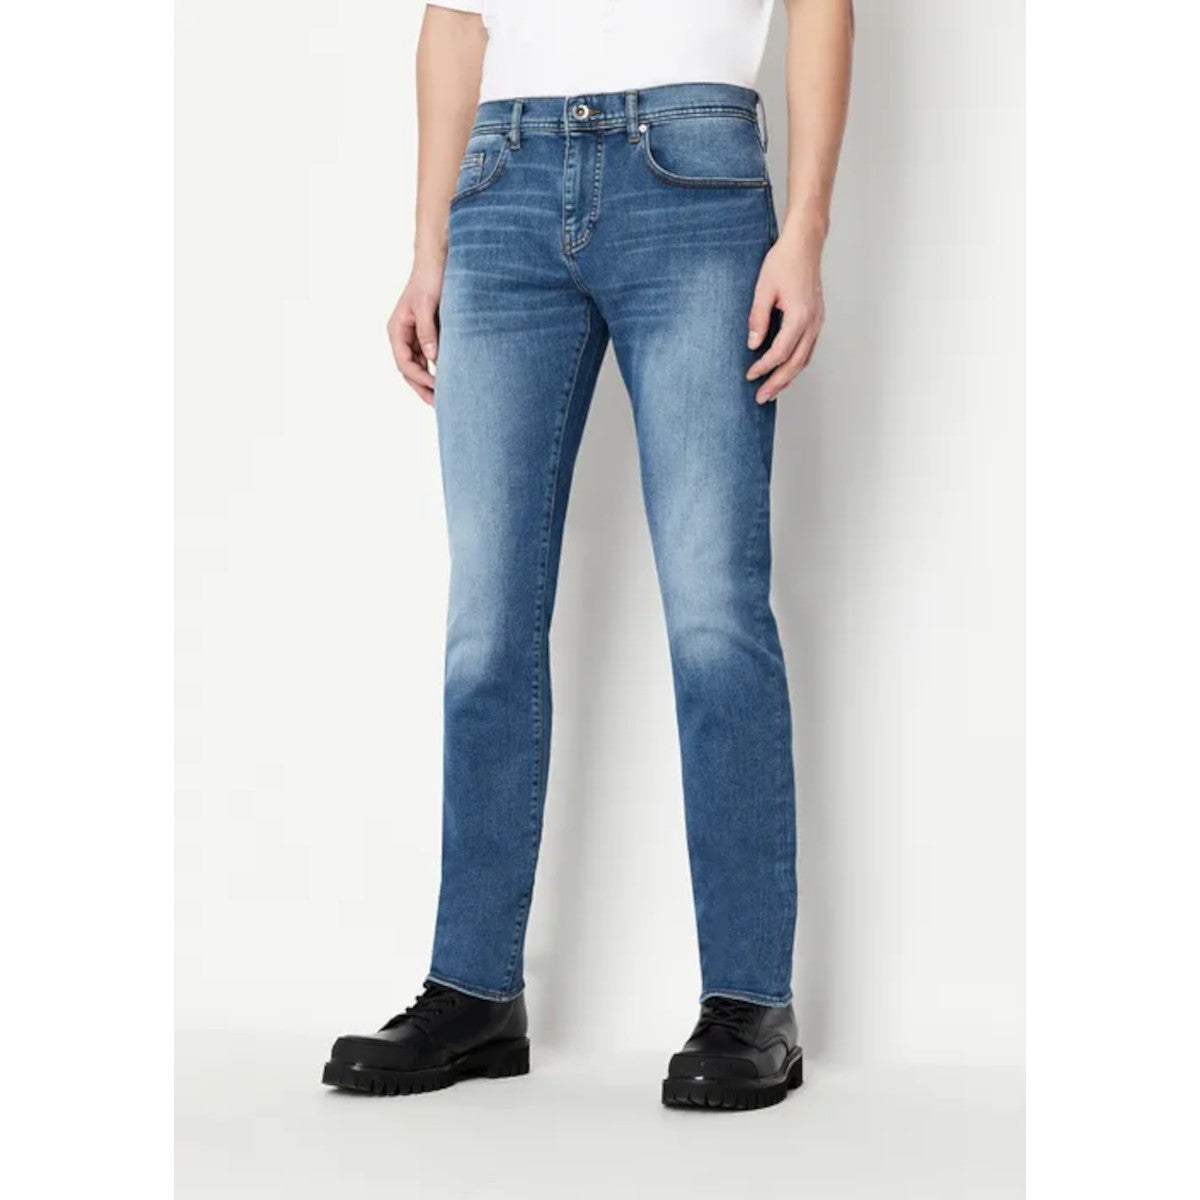 Armani Exchange Slim Fit Jeans Z2XXZ 1500 Indigo Denim